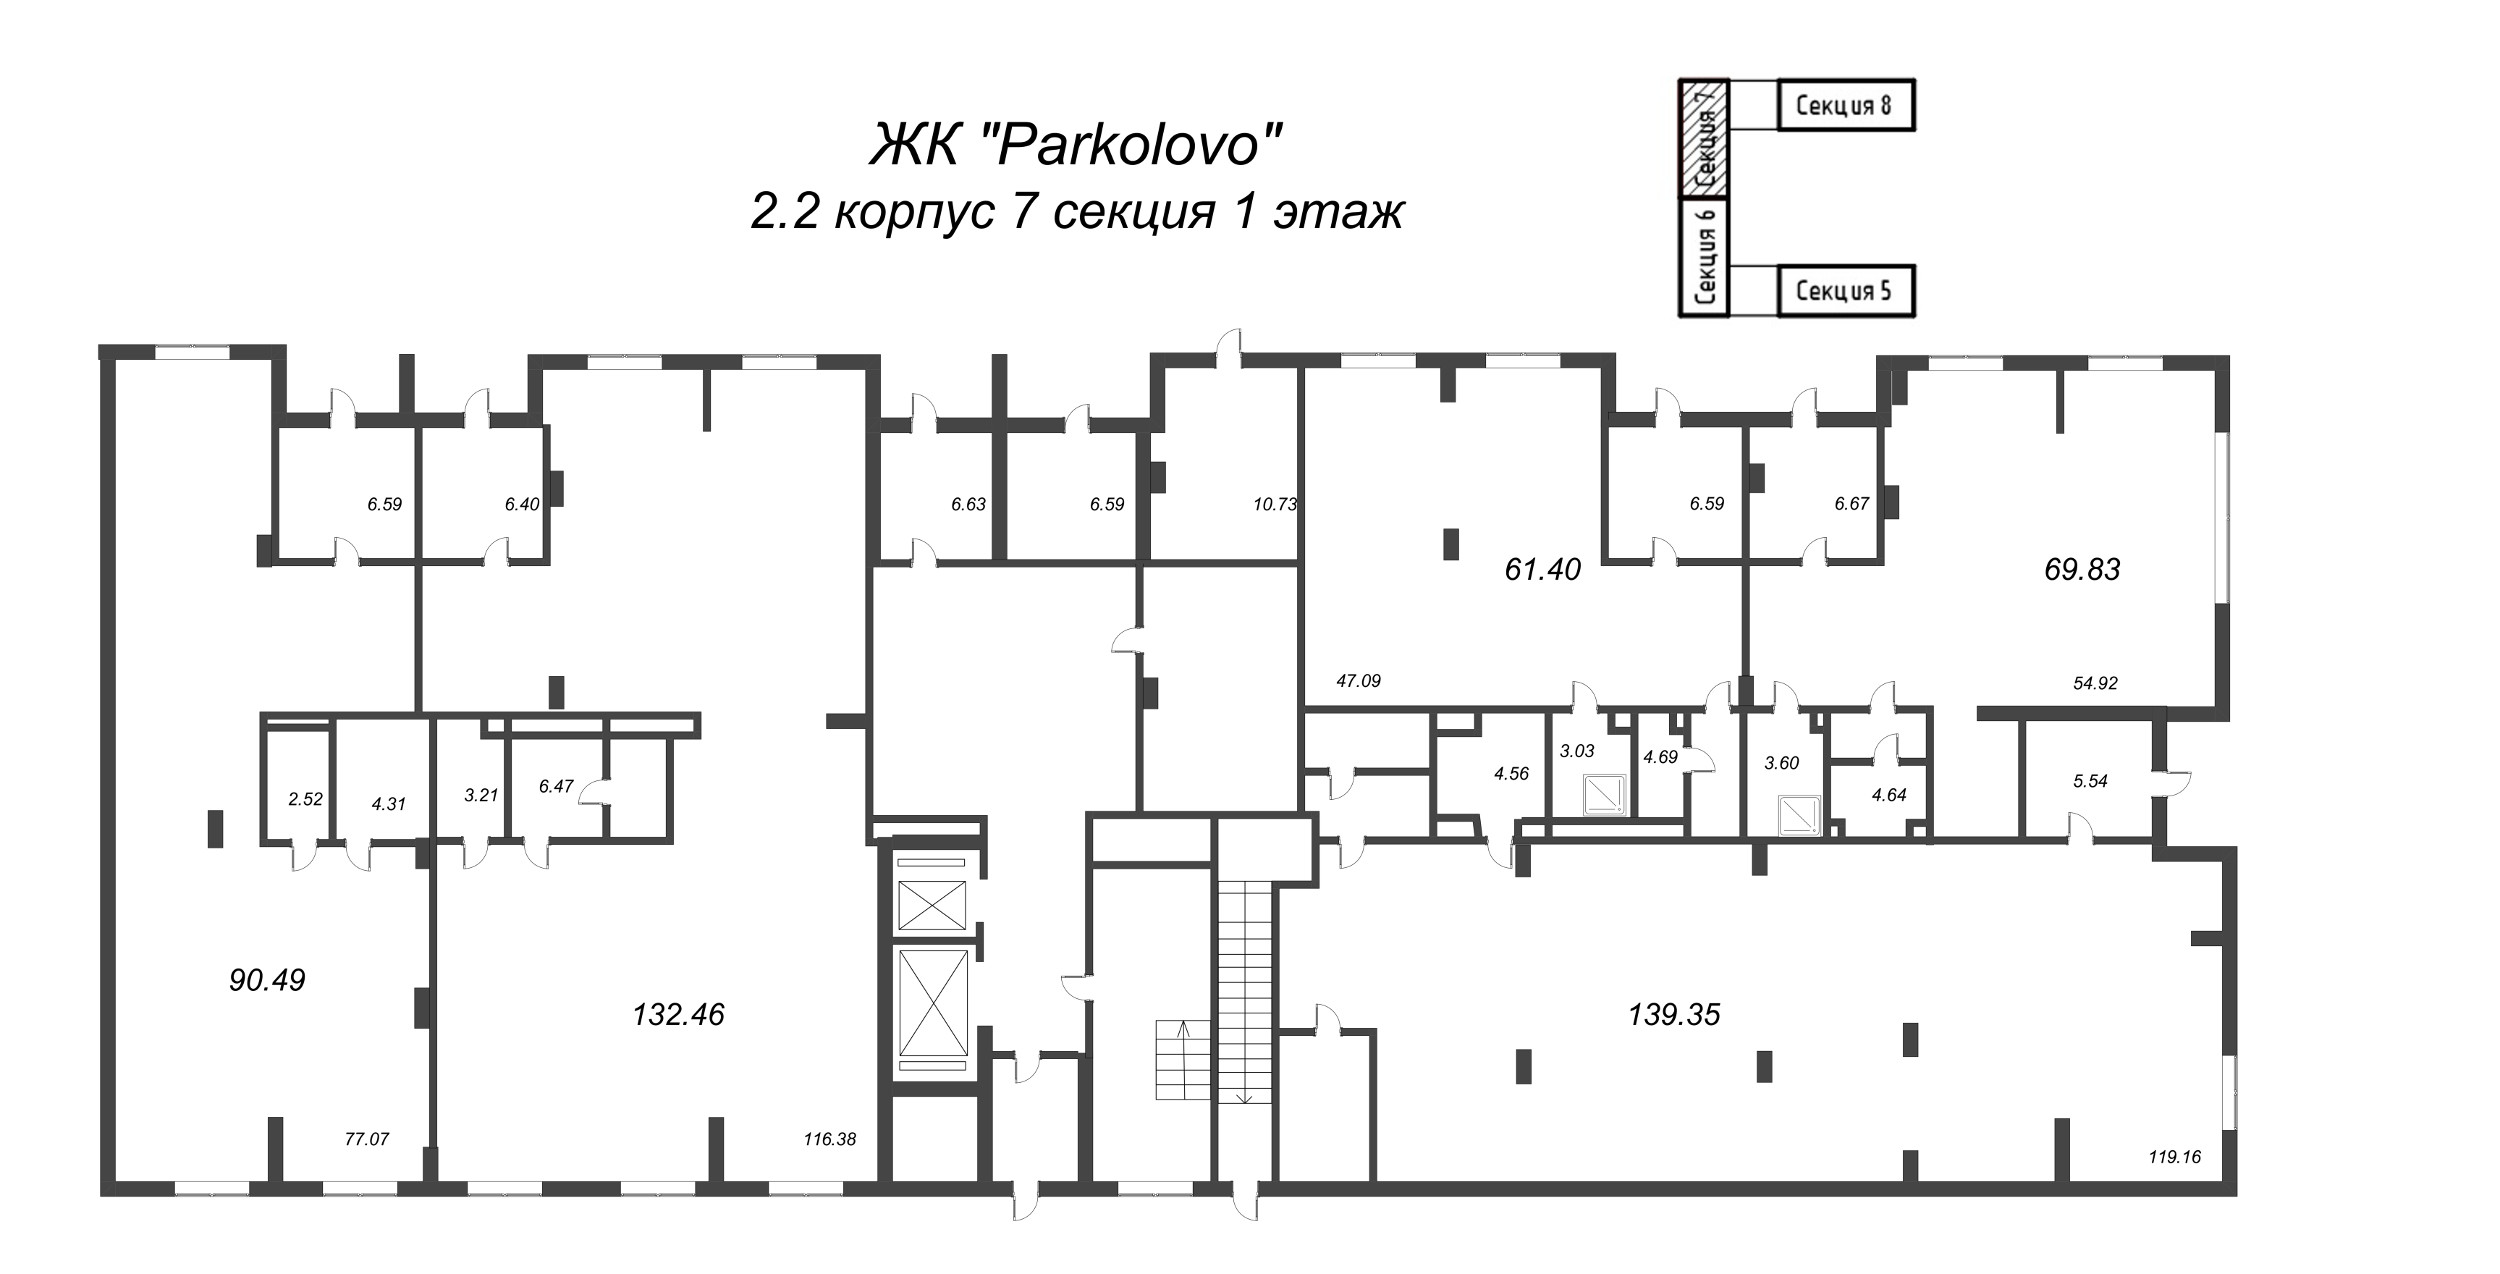 Помещение, 90.49 м² - планировка этажа